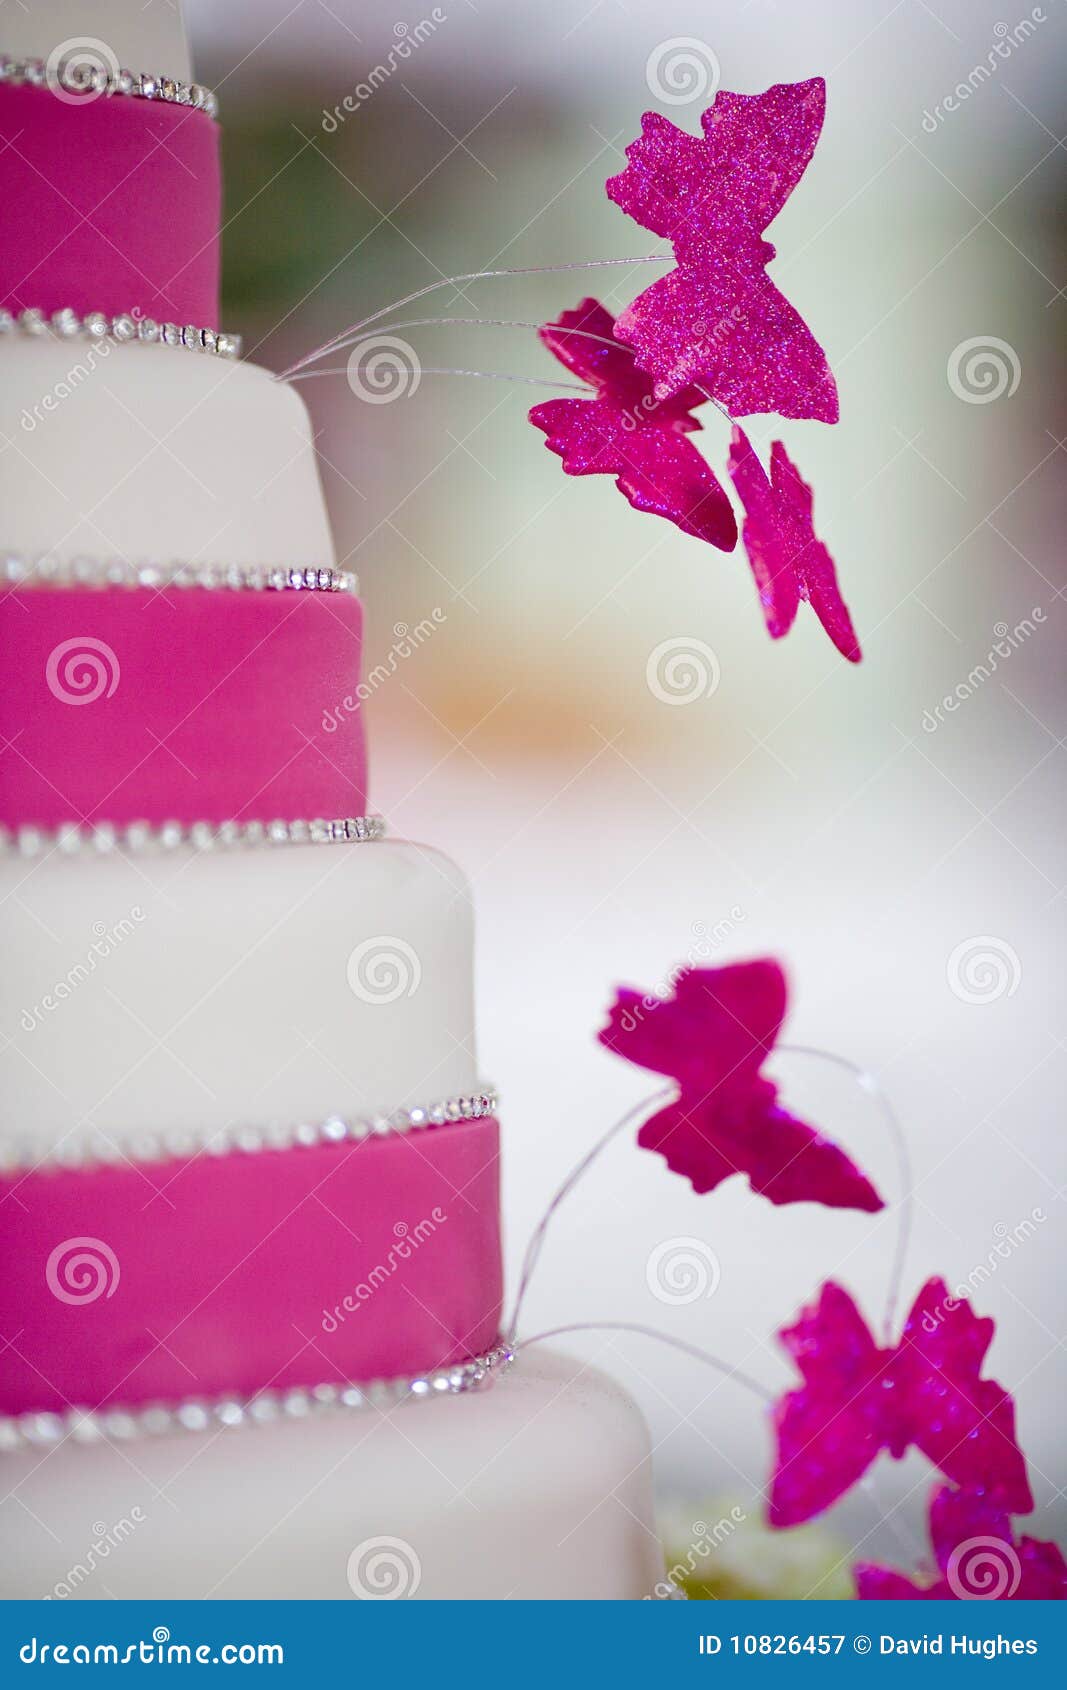 όμορφος γάμος κέικ